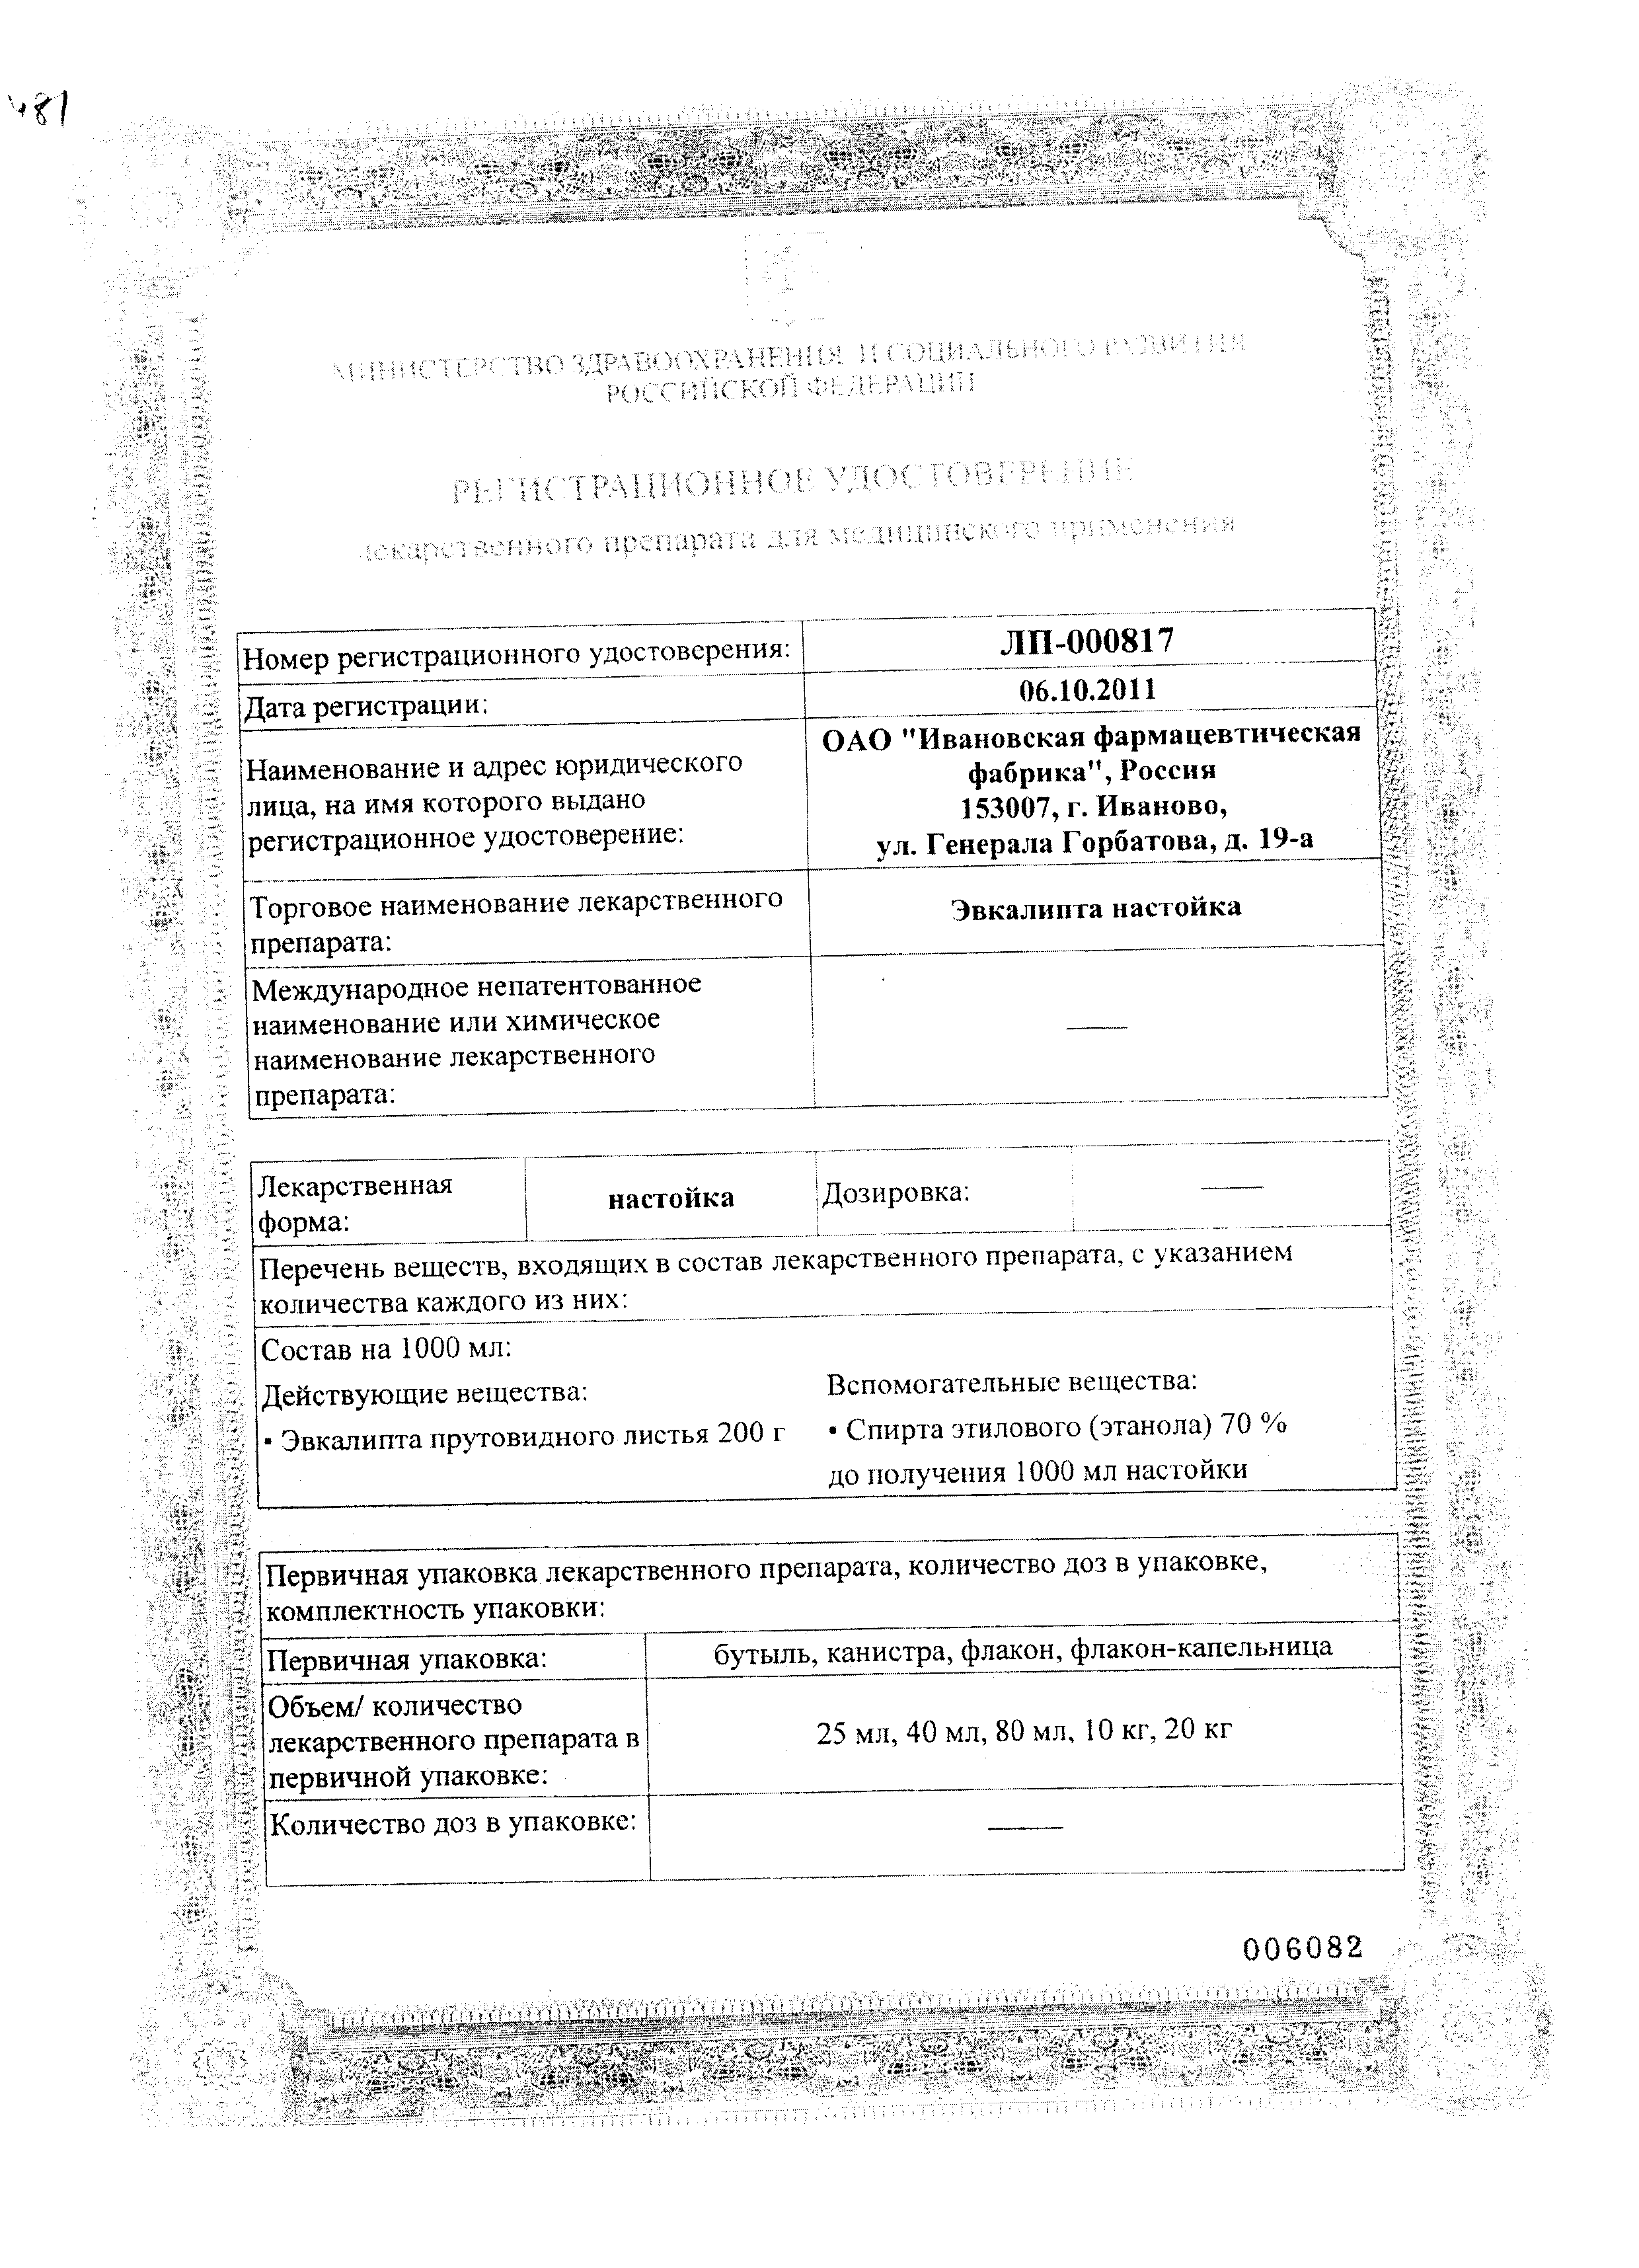 Эвкалипта настойка сертификат